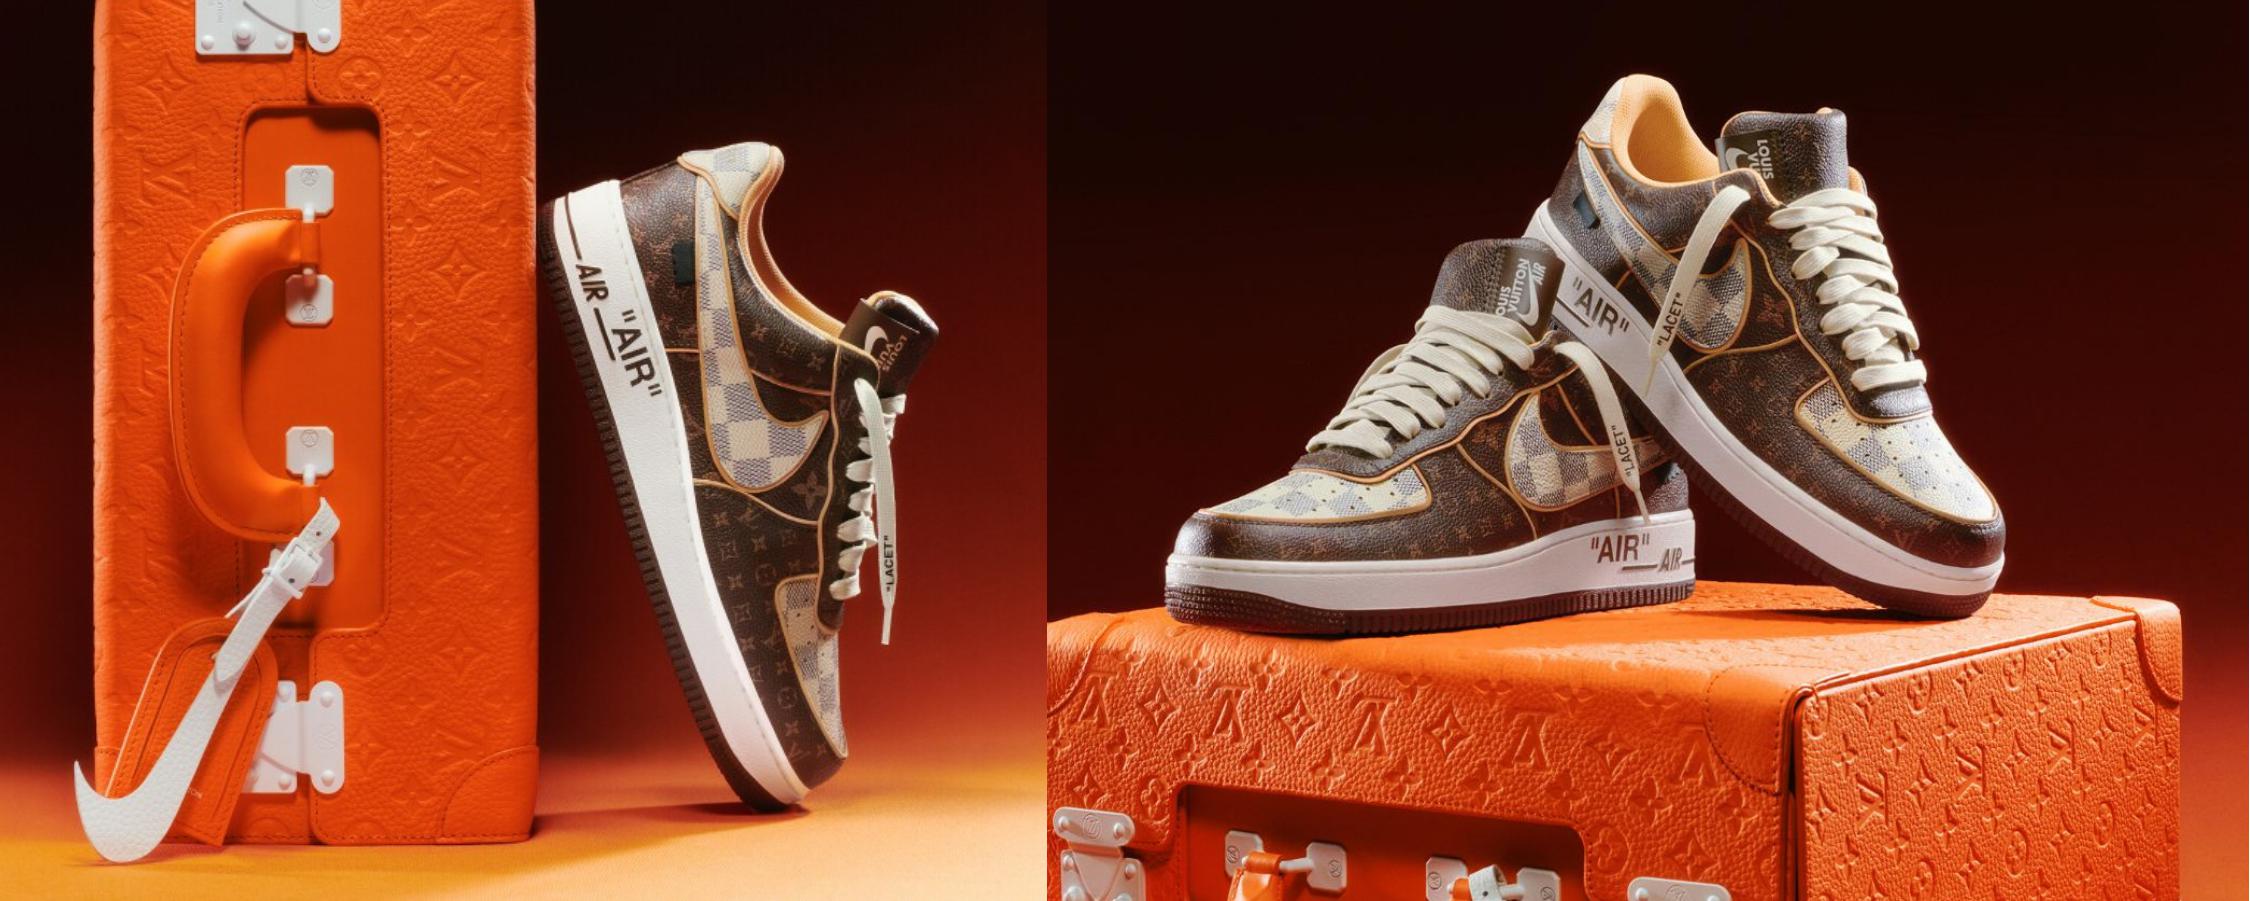 Louis Vuitton steekt de Air Force 1-sneakers van Nike in een